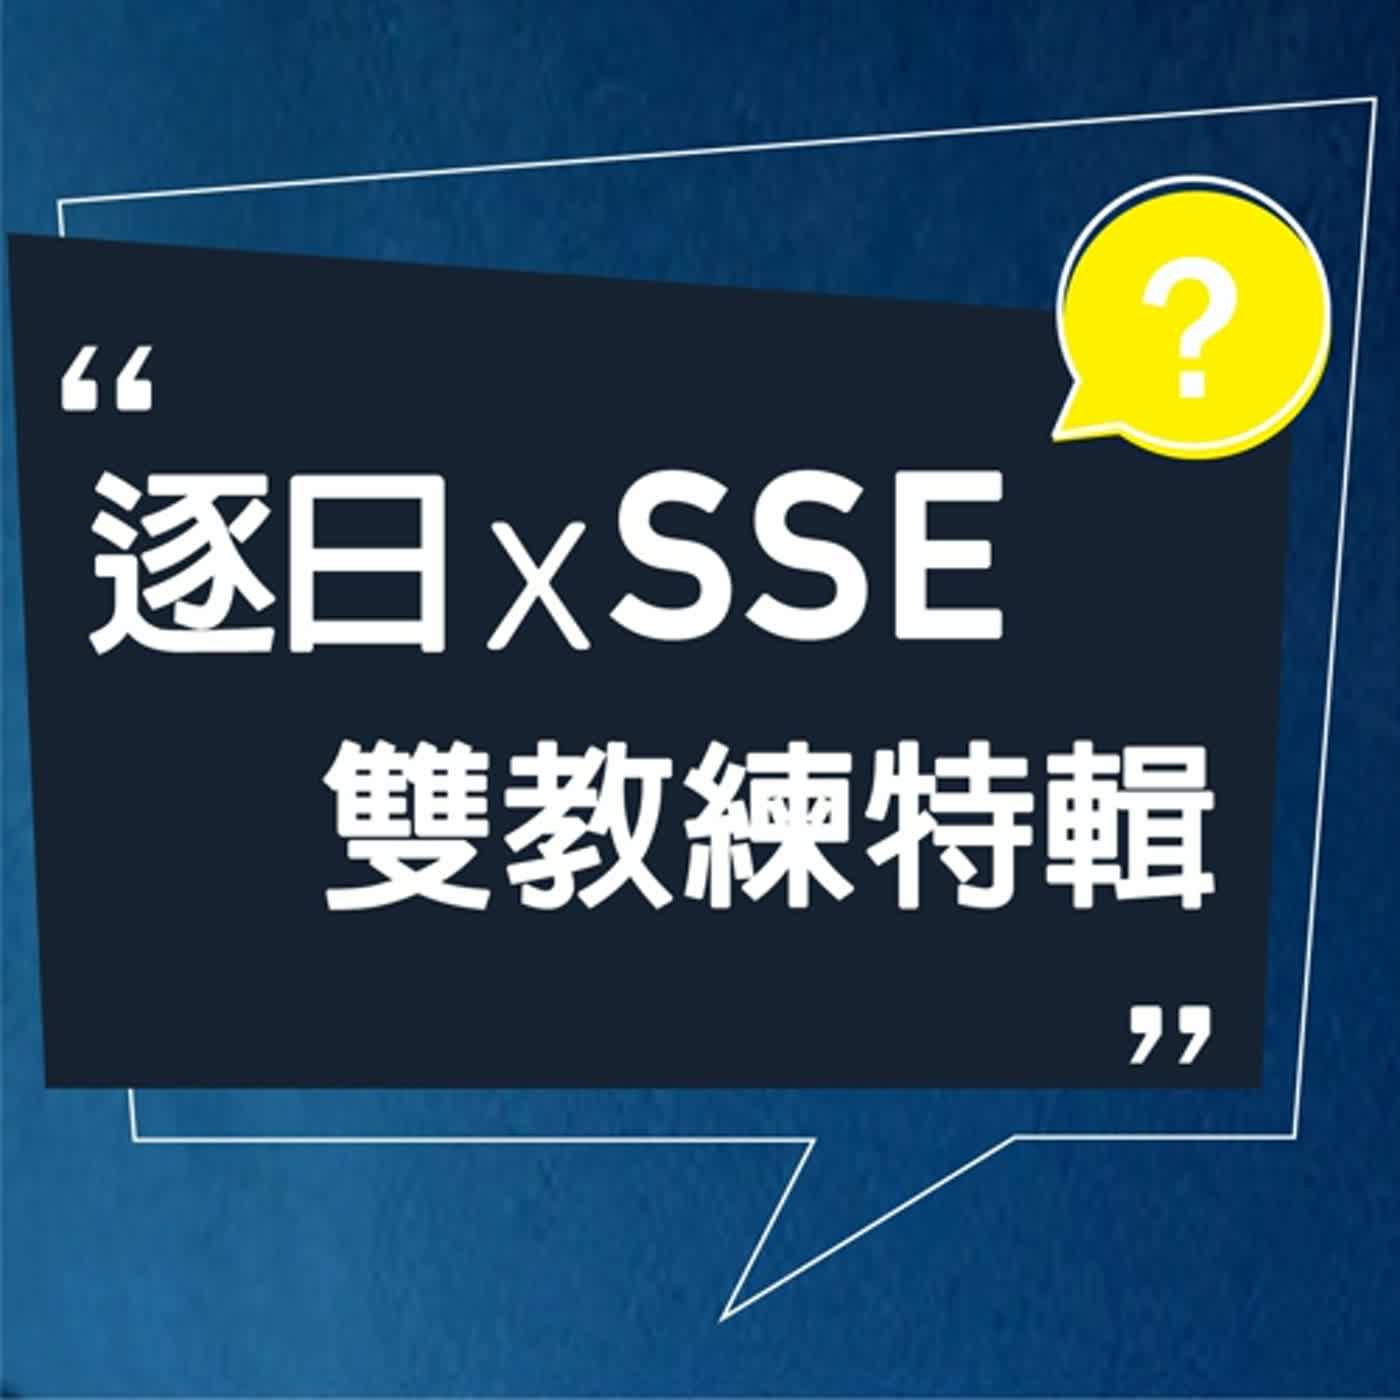 【特輯】逐日奇譚 x SSE 雙教練特別節目